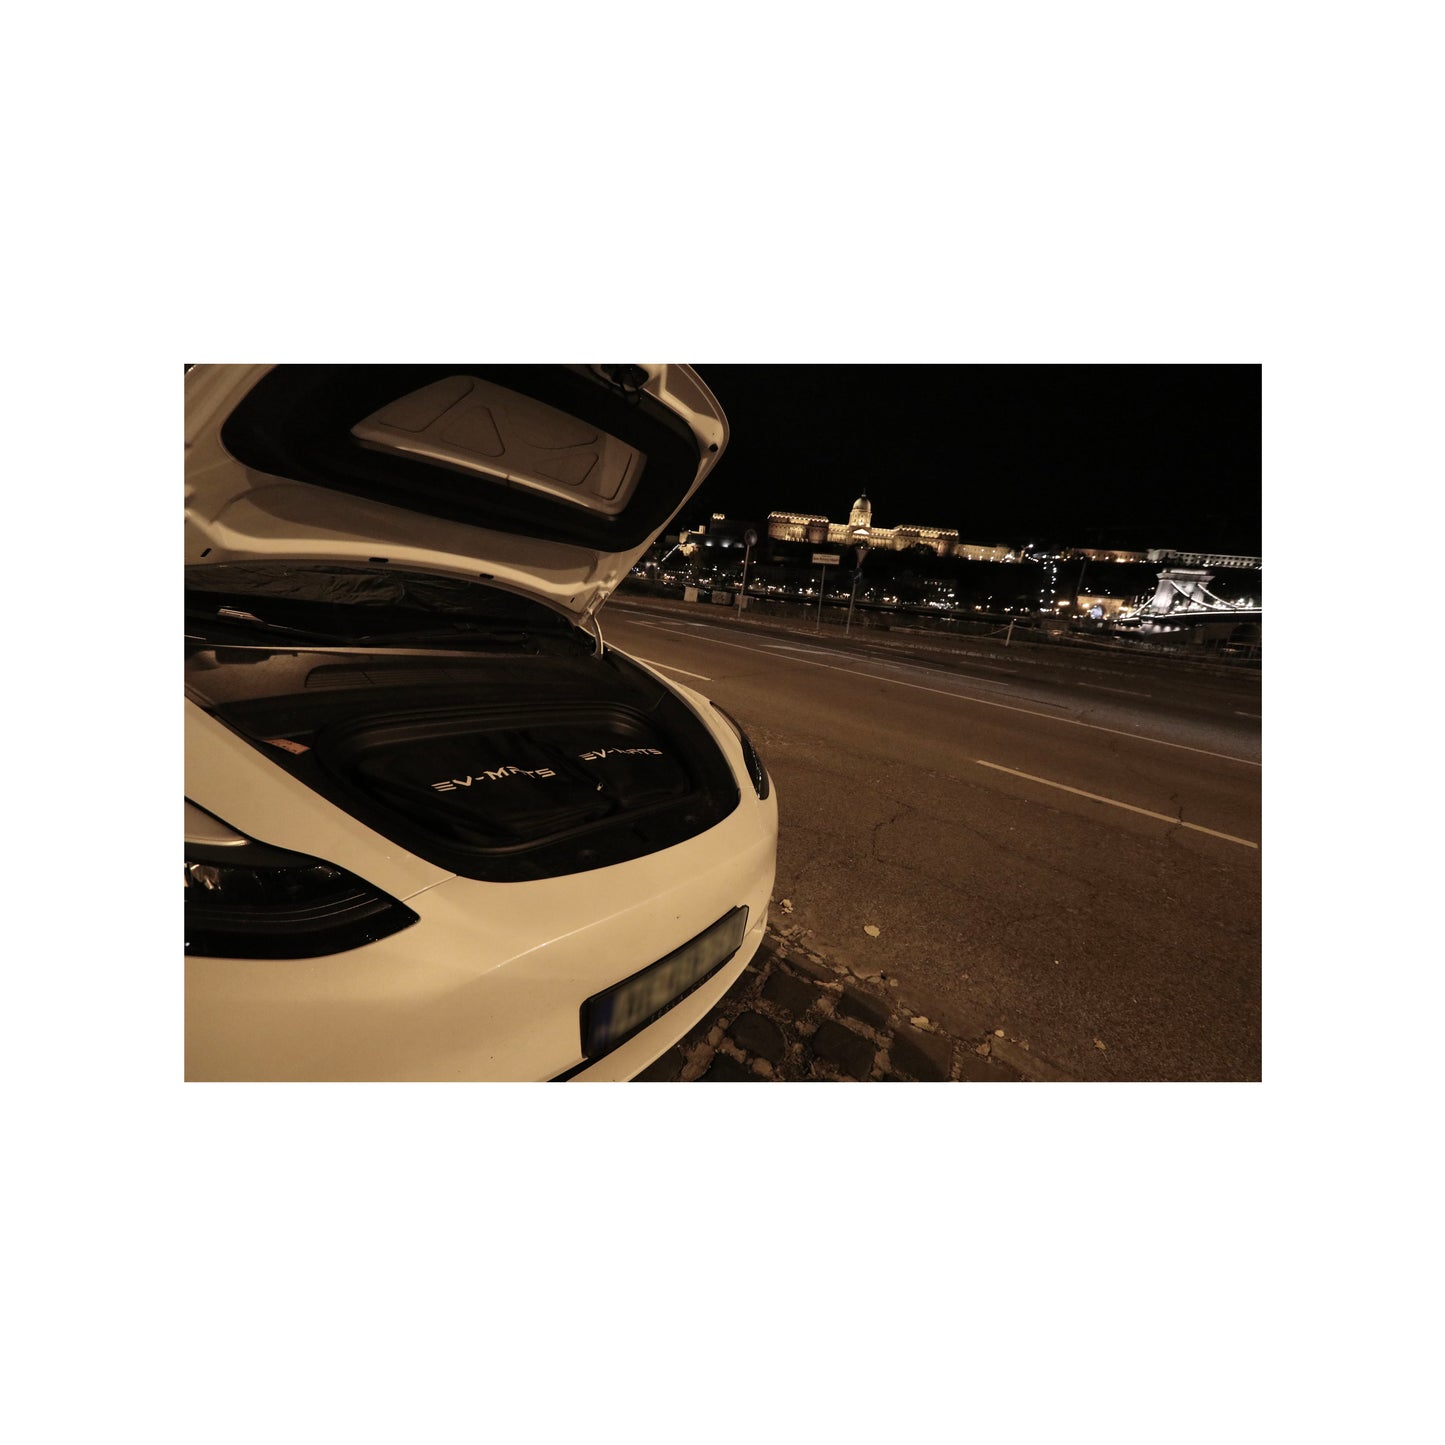 EV-MATS Deluxe CAMP SET per Tesla Model 3 con materasso Tesla con borsa impermeabile per il bagagliaio posteriore, lenzuolo di raso, piumone, 2 cuscini con fodere, 11 sfumature e 2 borse impermeabili per il bagagliaio anteriore del Model 3